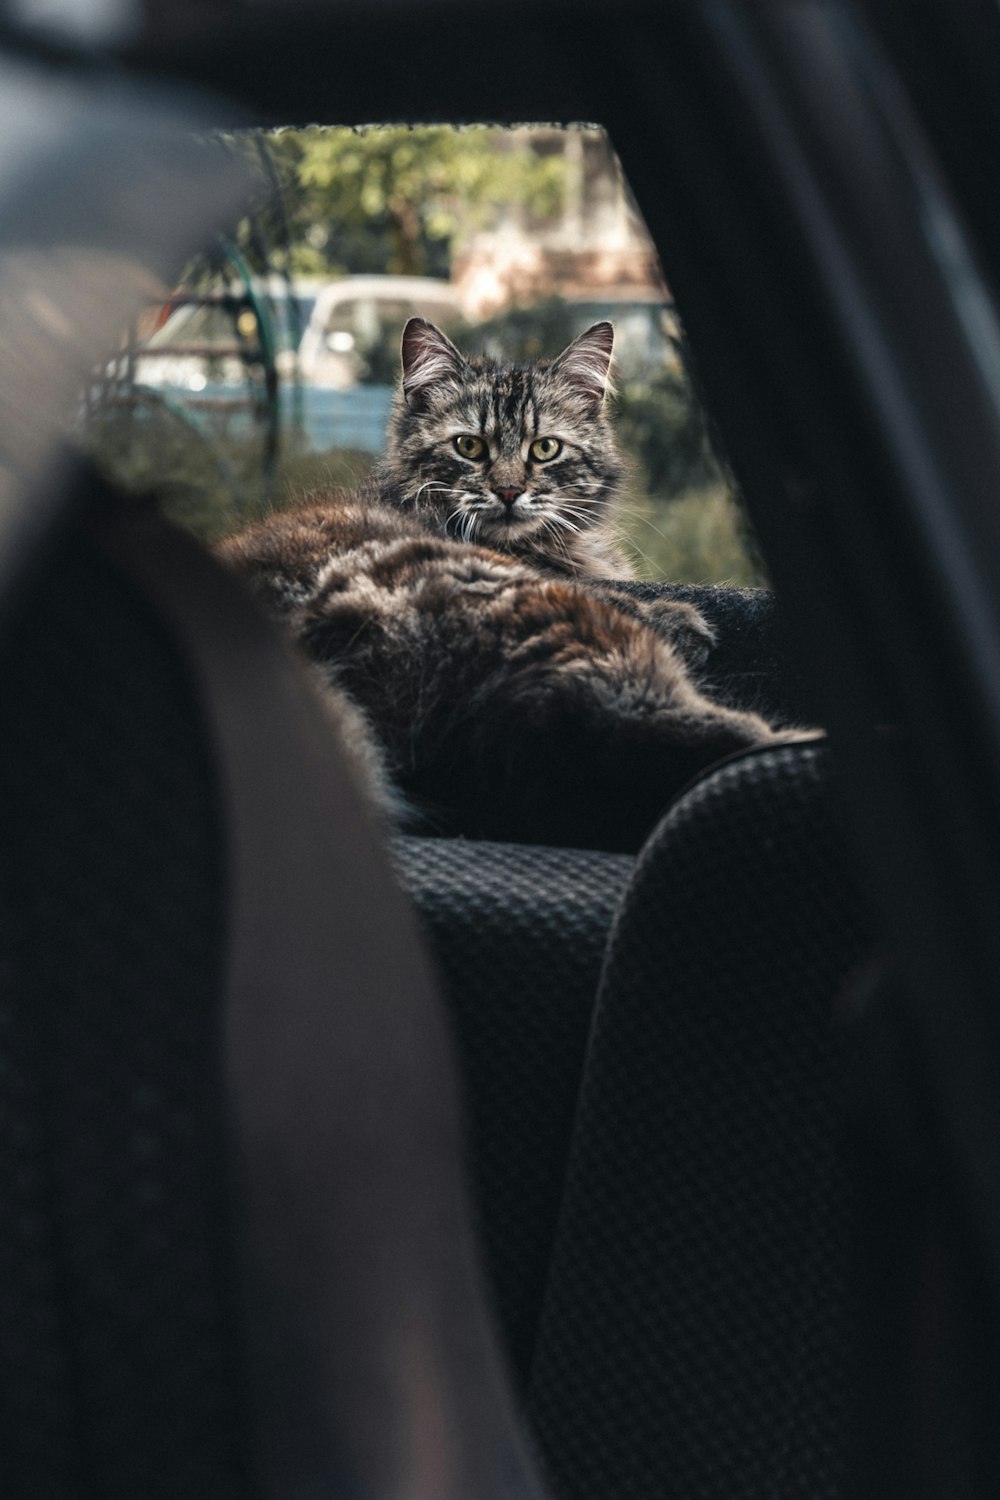 a cat sitting in a car